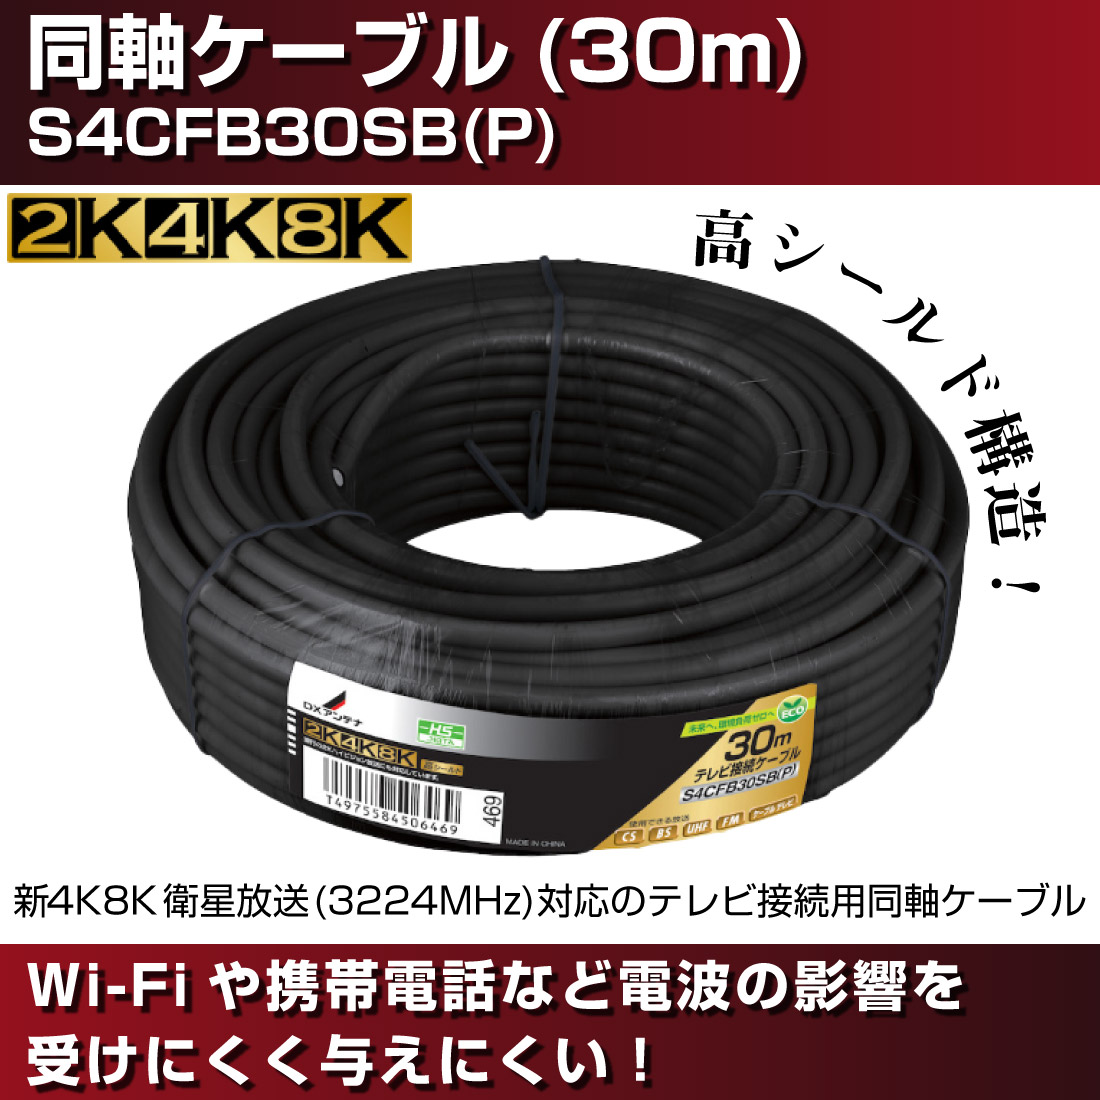 同軸ケーブル(30m) S4CFB30SB(P) テレビ ケーブル 4K8K 黒 DXアンテナ